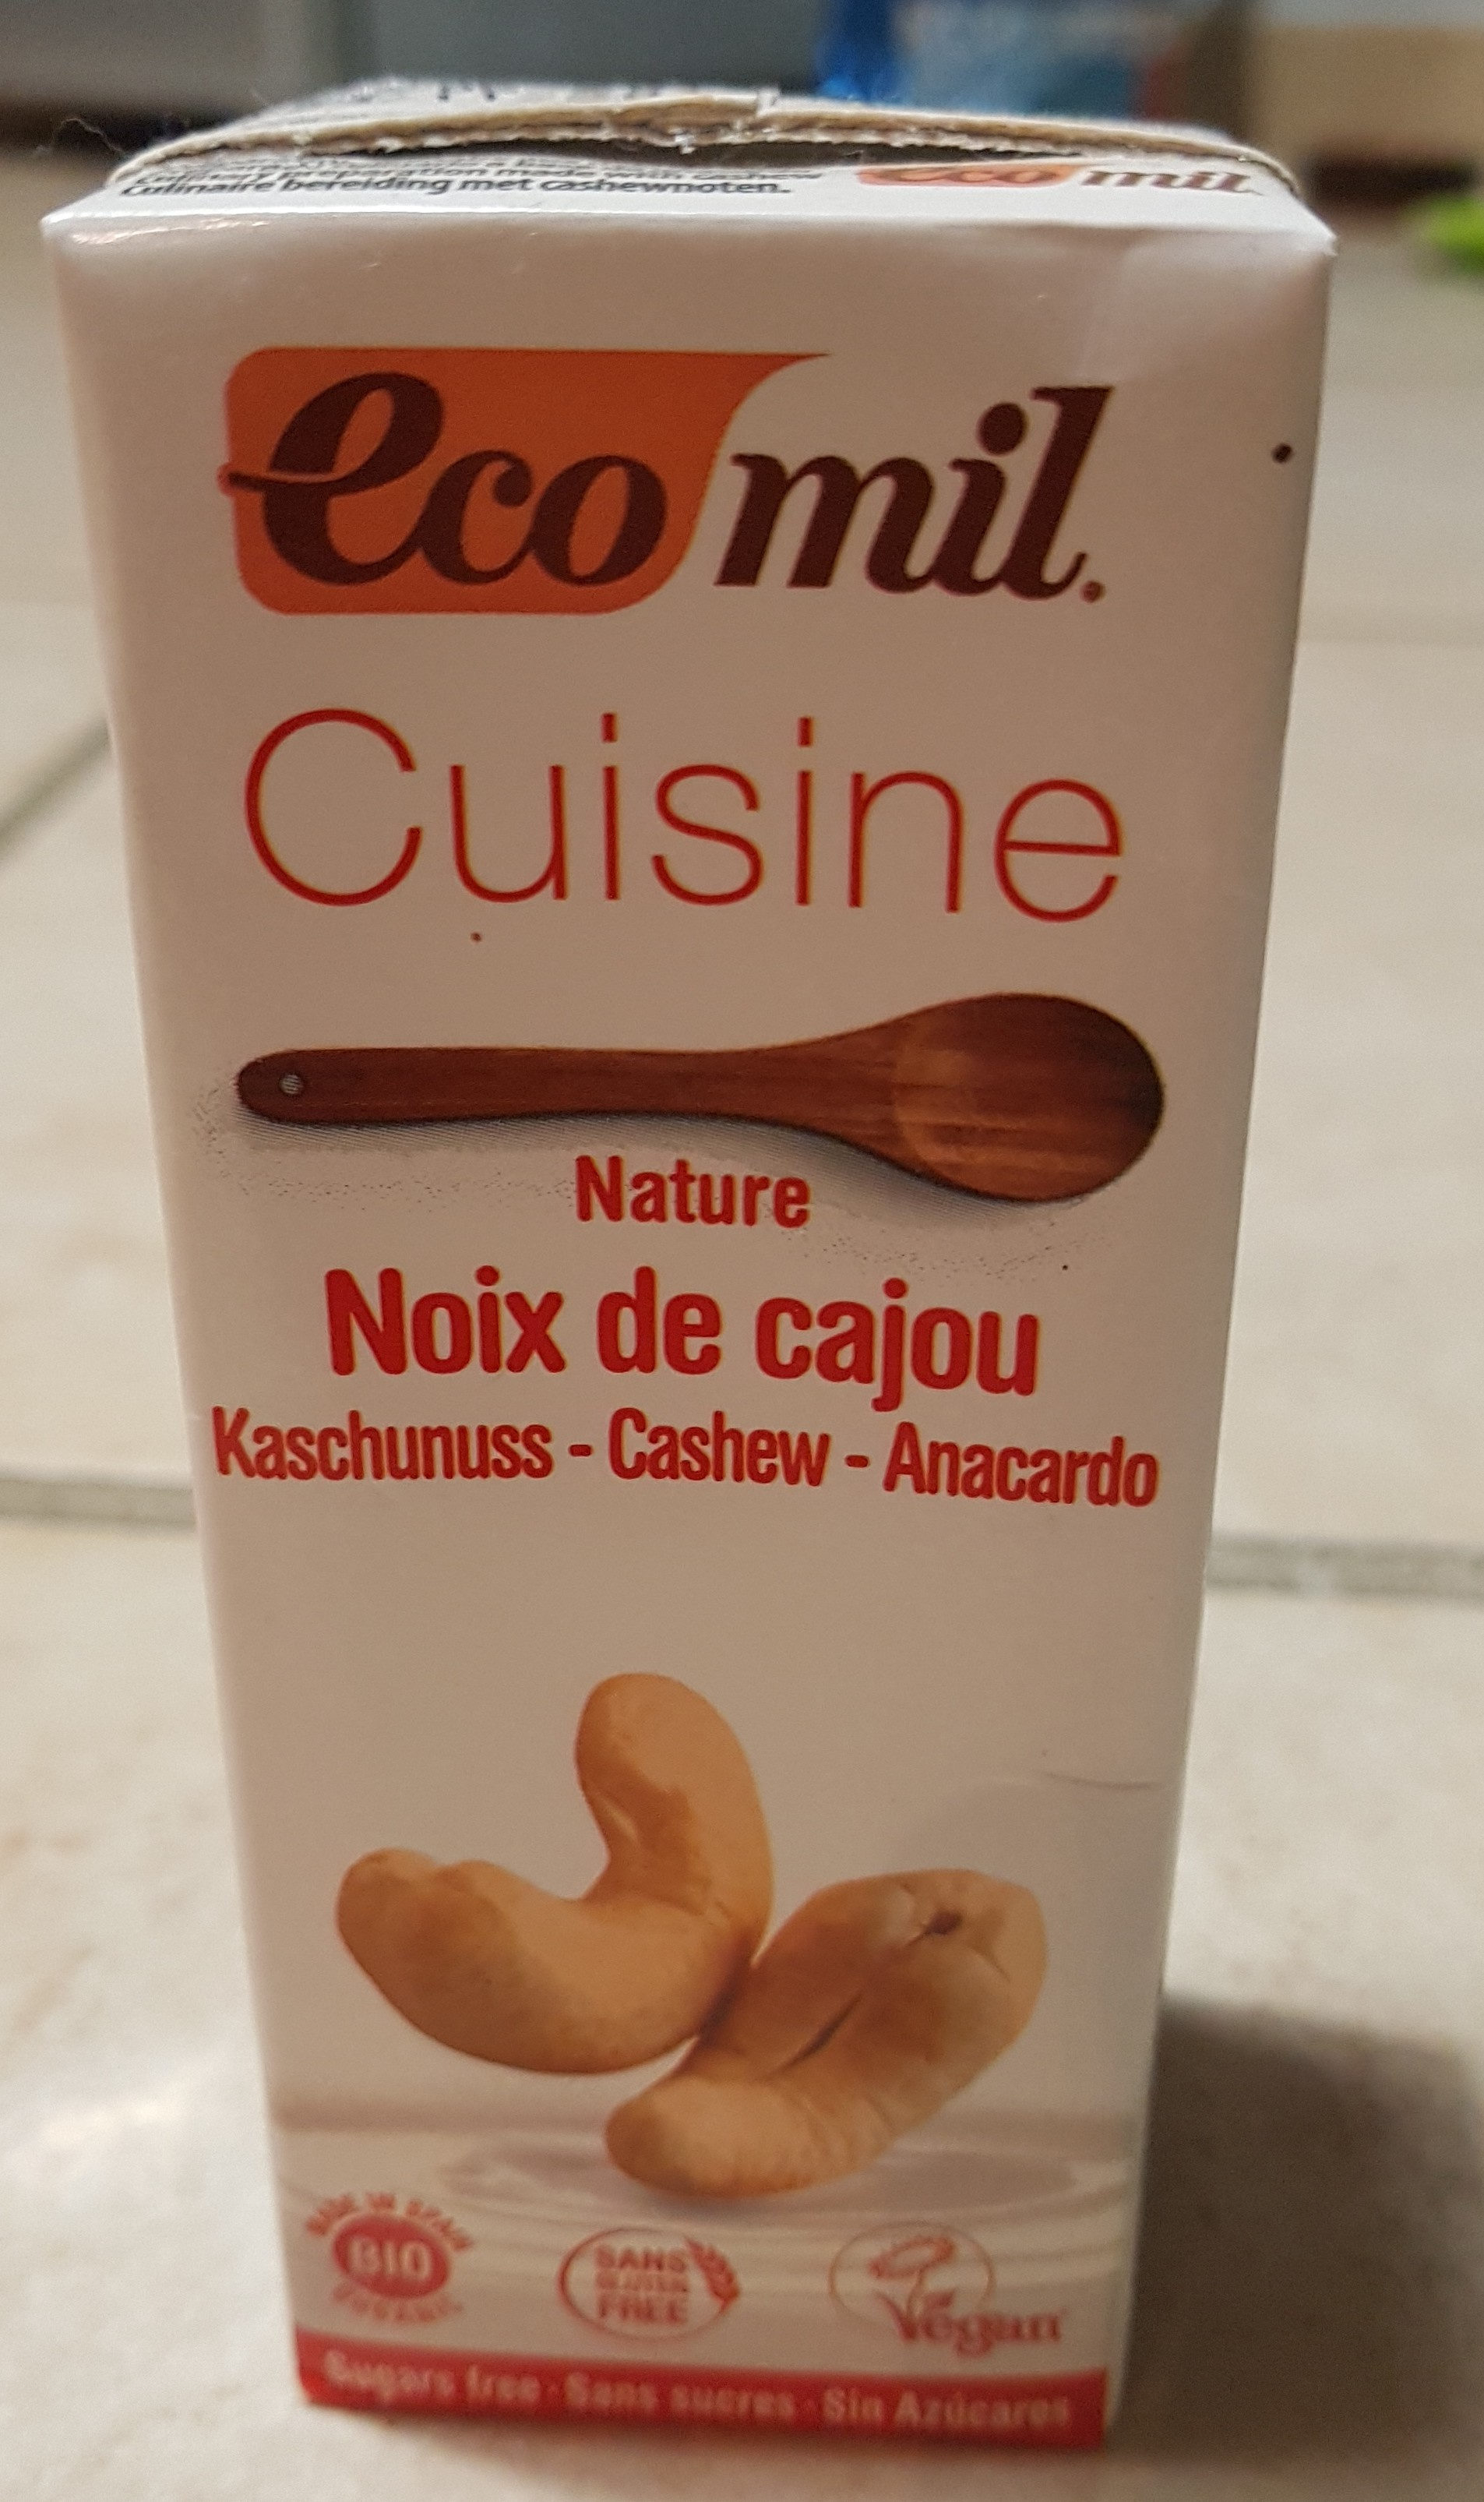 Cuisine nature noix de cajou - Product - fr